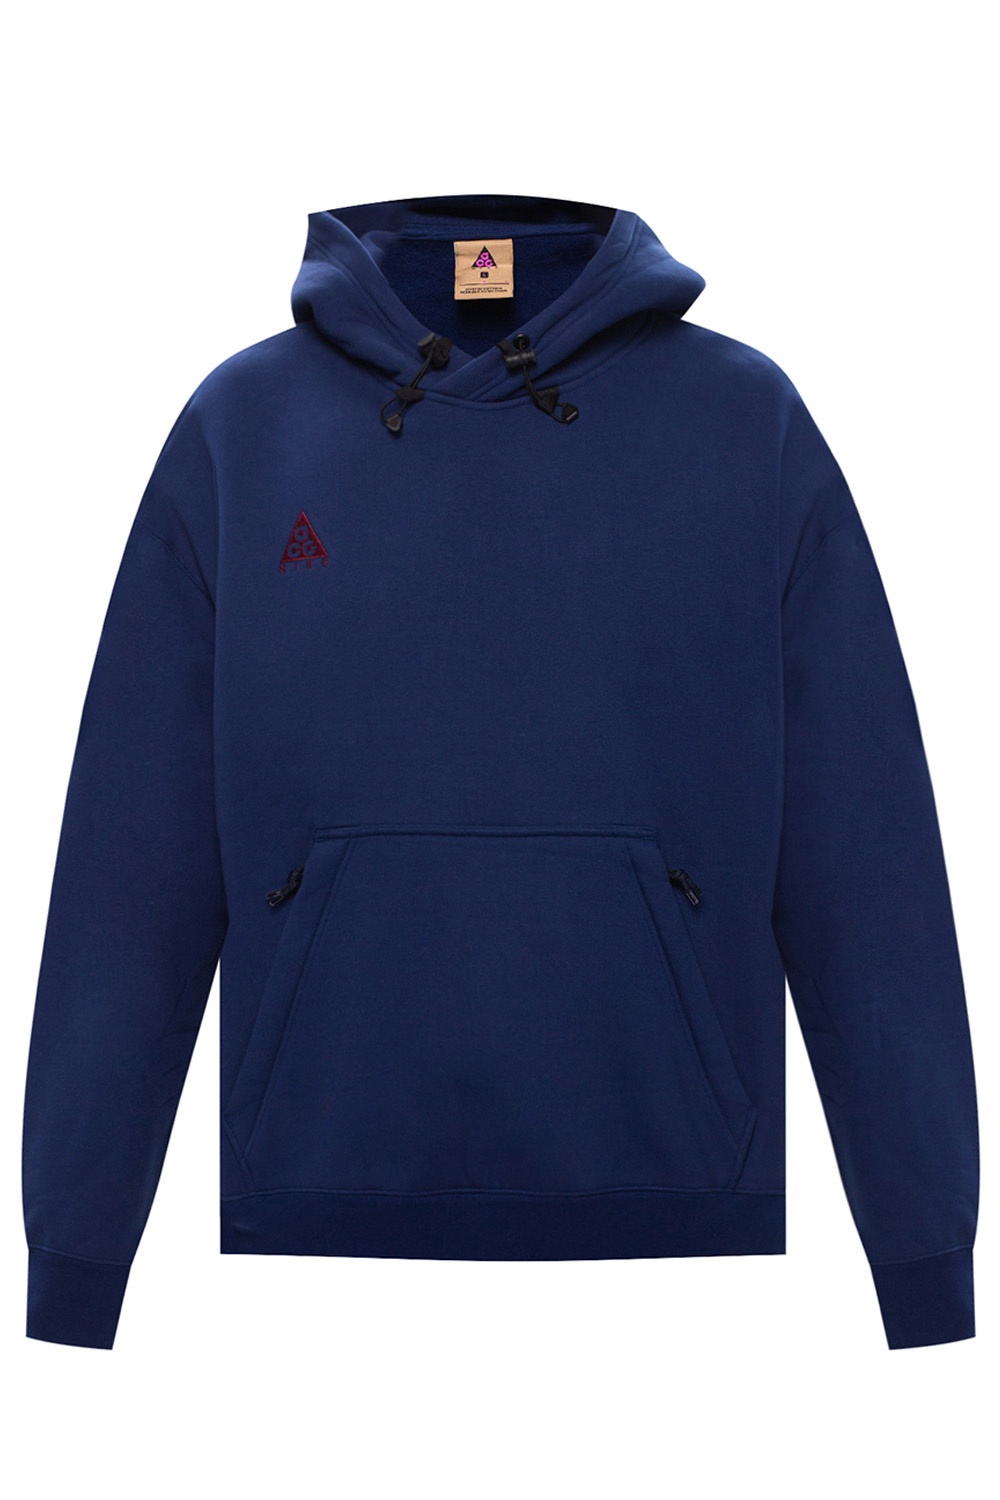 blue void nike hoodie